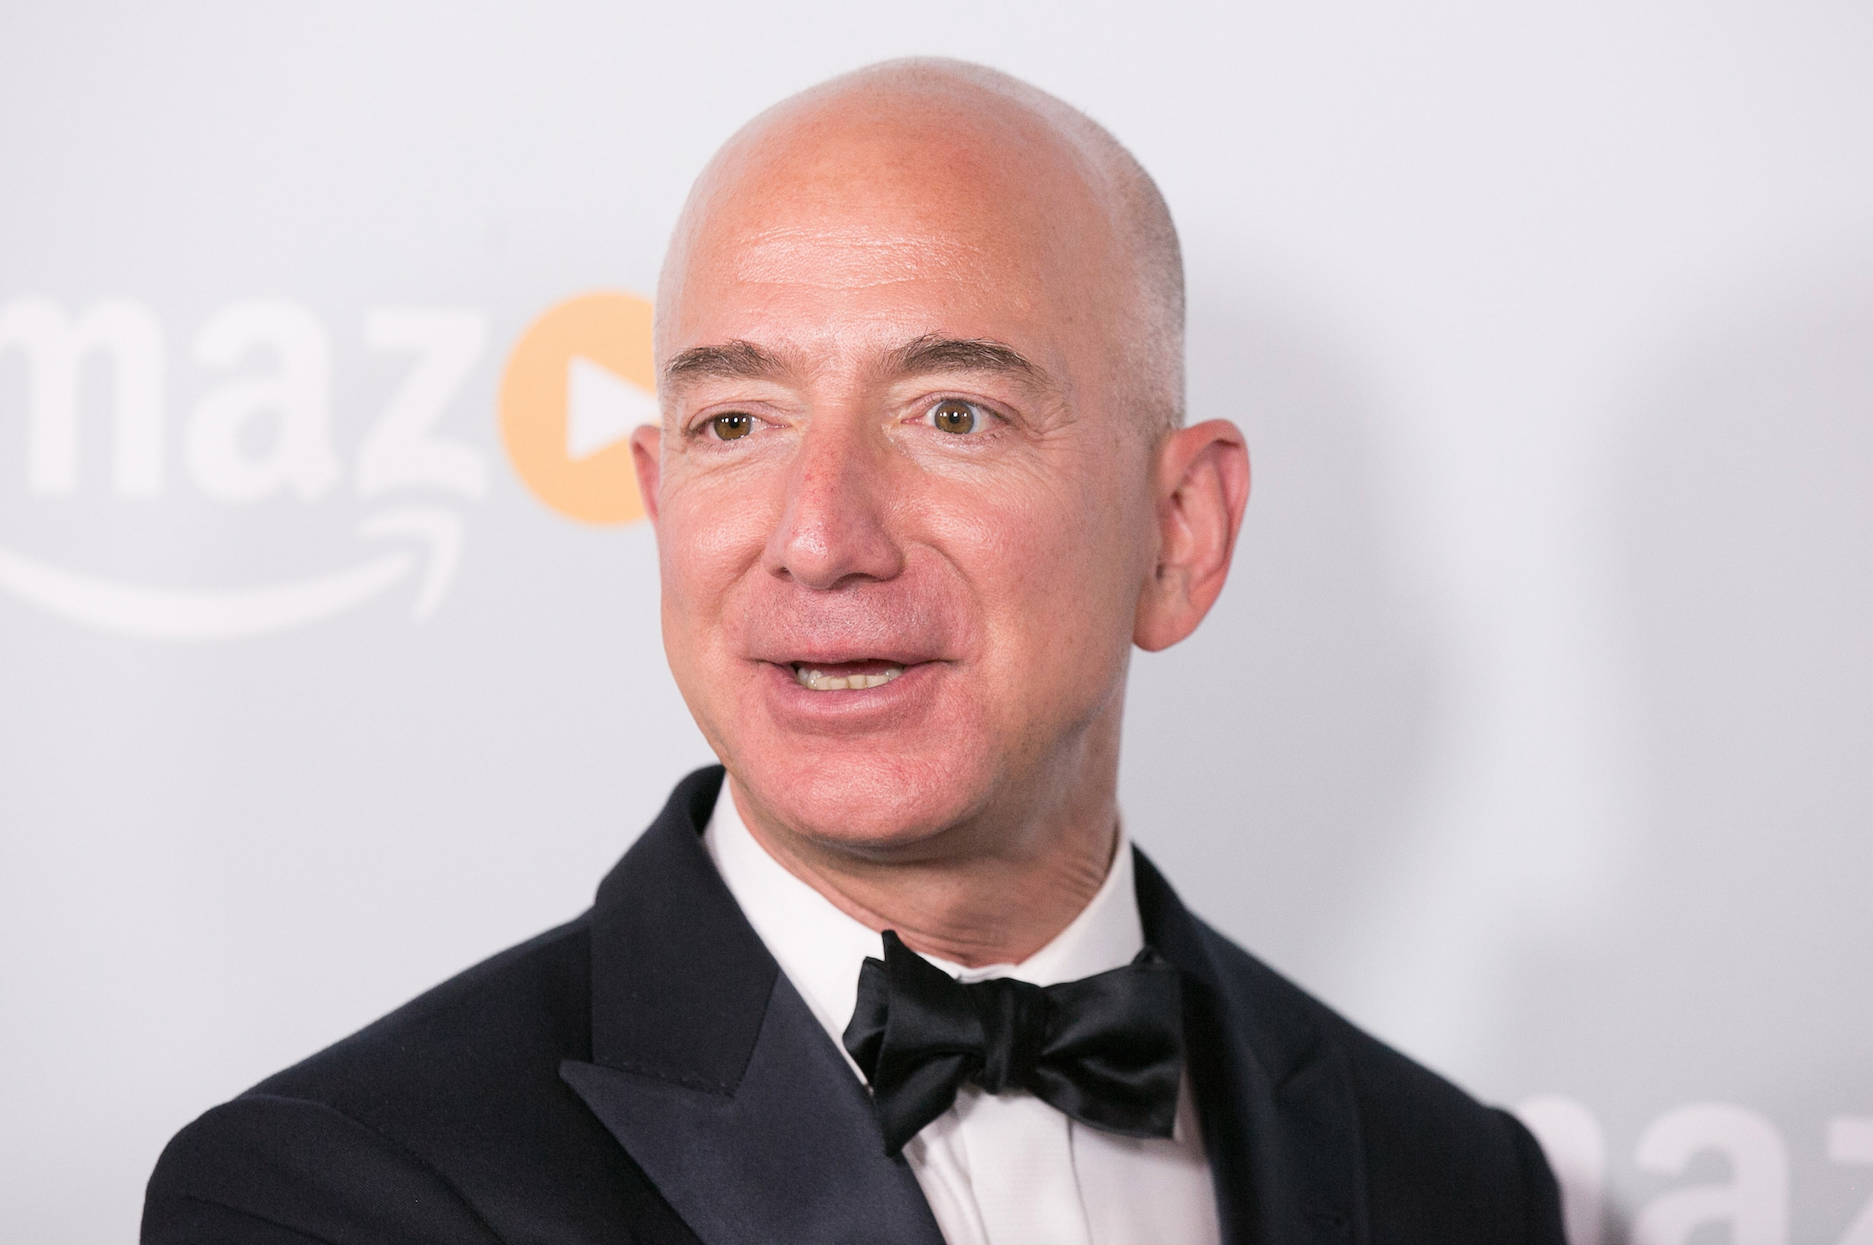 Gelecek nesile yön veren adamlar -2: Jeff Bezos